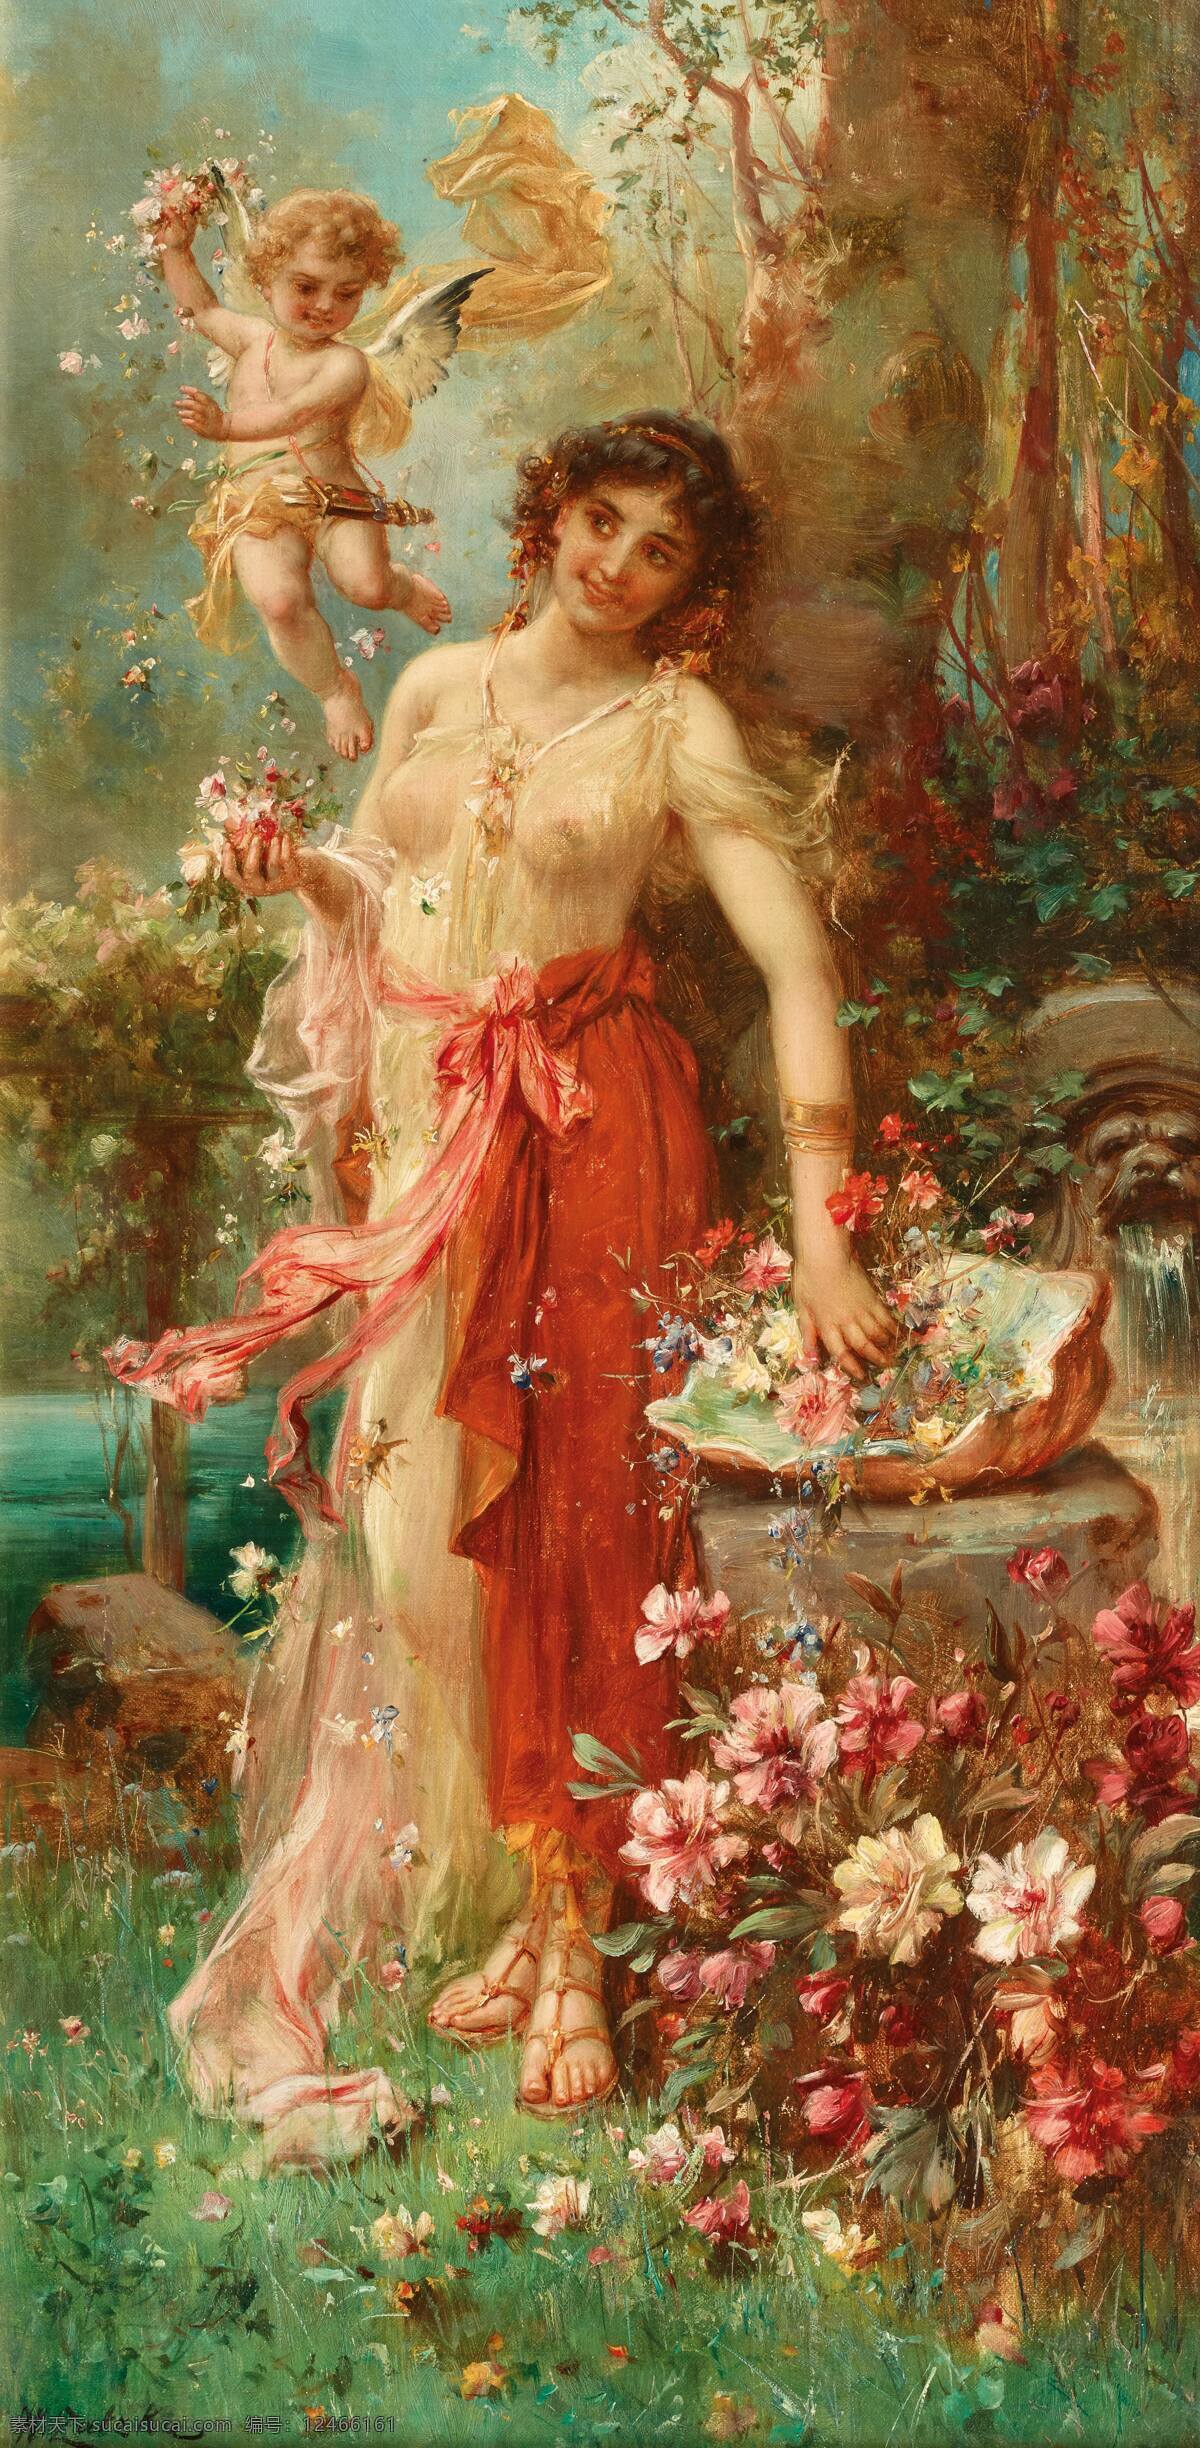 汉斯 查 兹 卡 作品 奥地利画家 花神弗洛拉 小天使 鲜花盛开 19世纪油画 油画 文化艺术 绘画书法